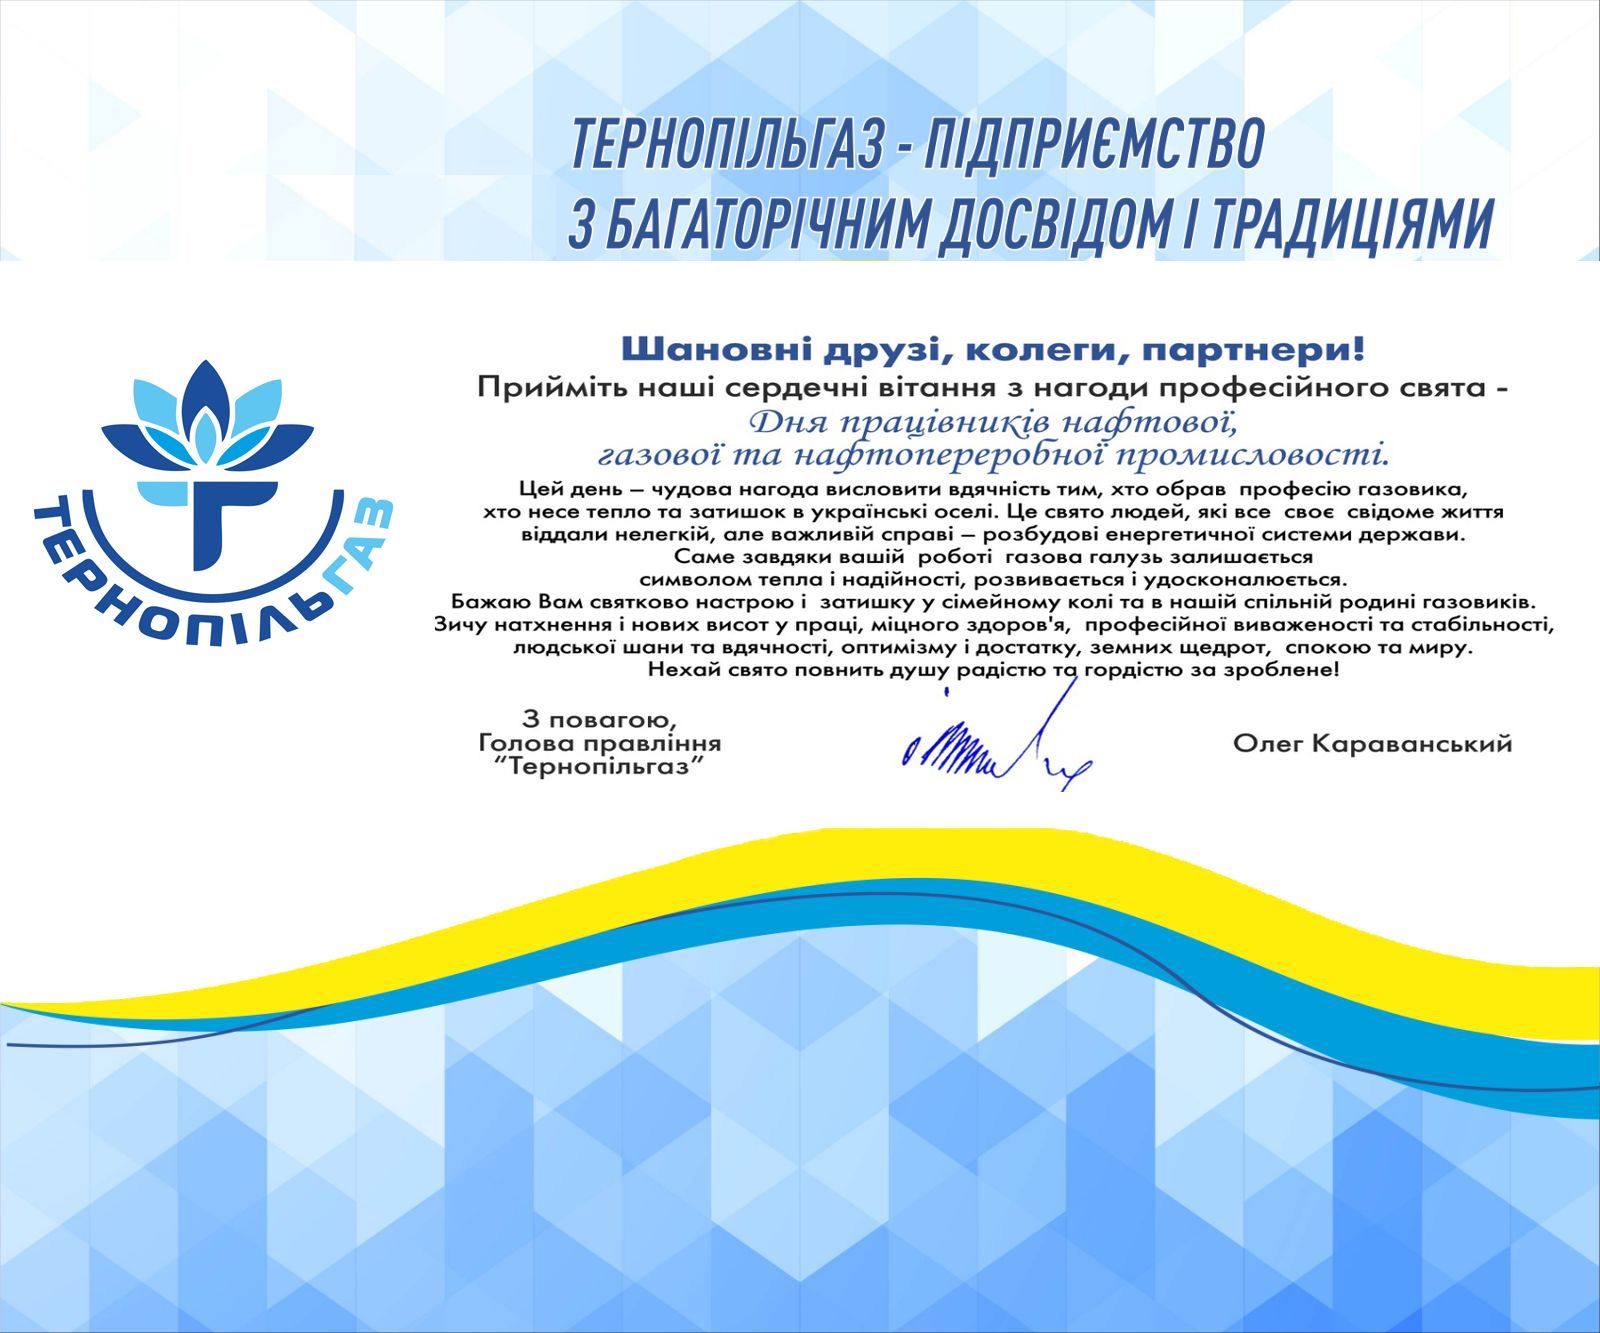 Привітання Голови правління ПрАТ «Тернопільгаз» з днем працівників нафтової, газової та нафтопереробної промисловості